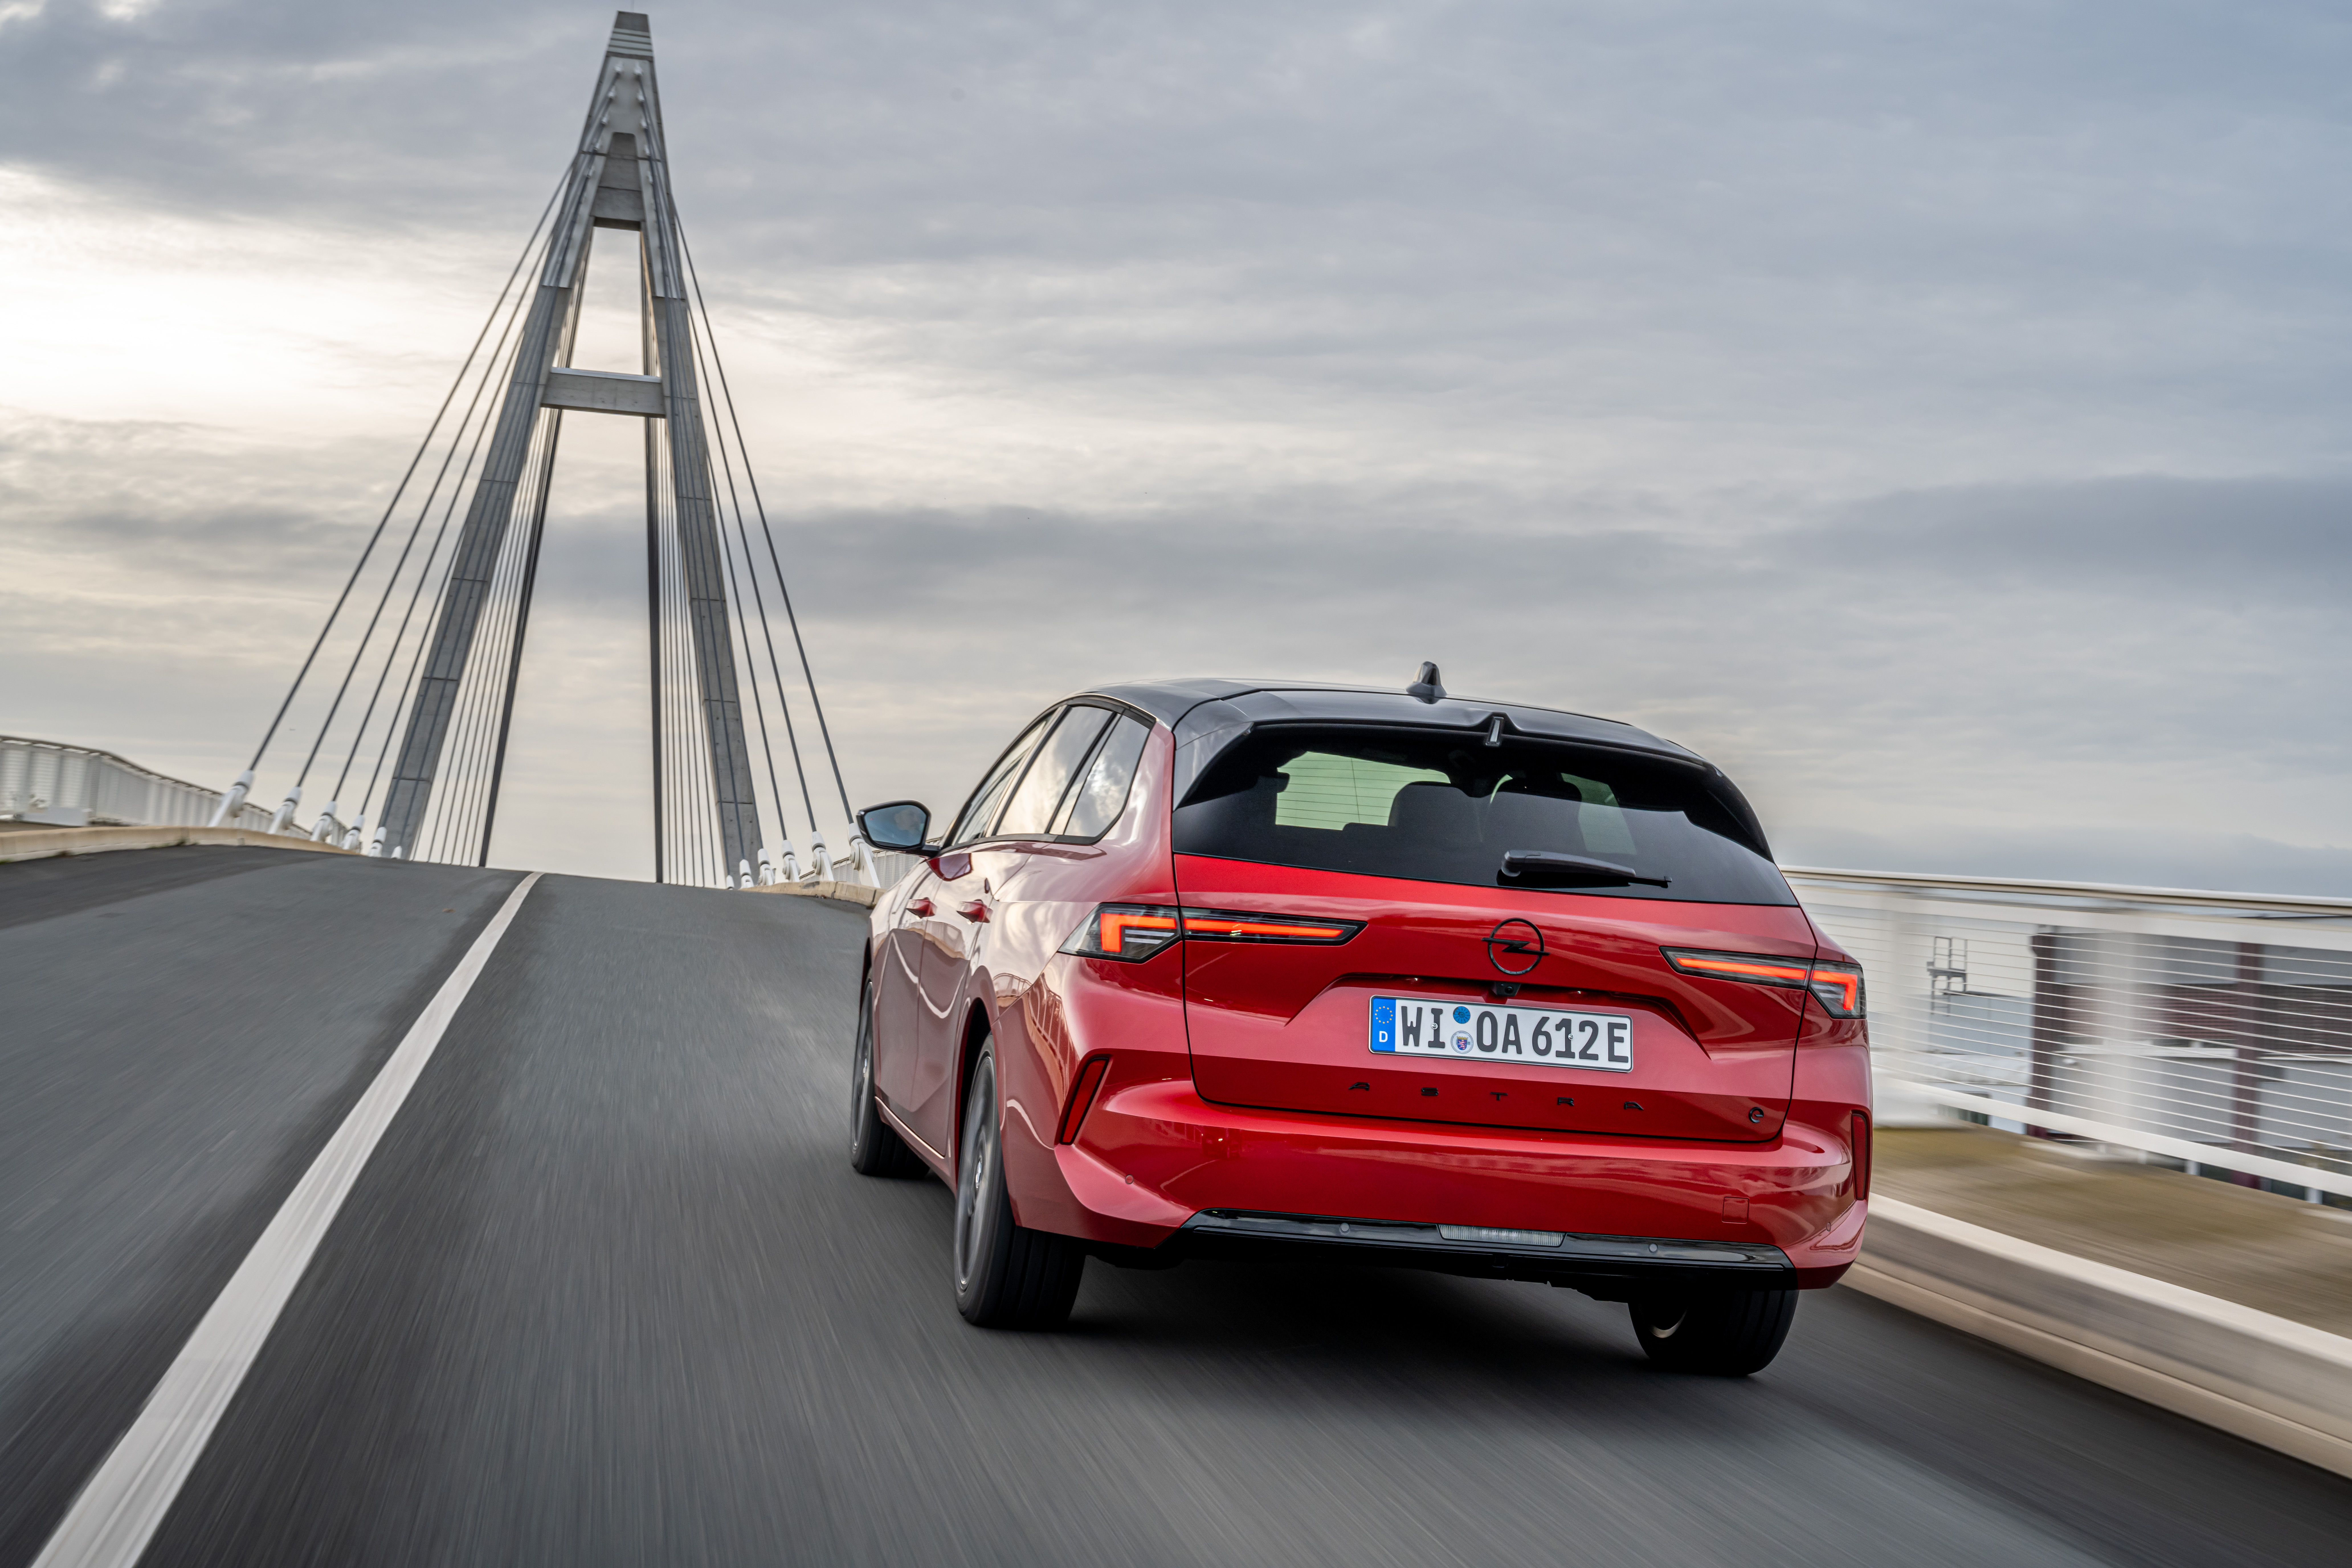 Die aerodynamische Form hilft, den Verbrauch zu senken. Foto: © Opel